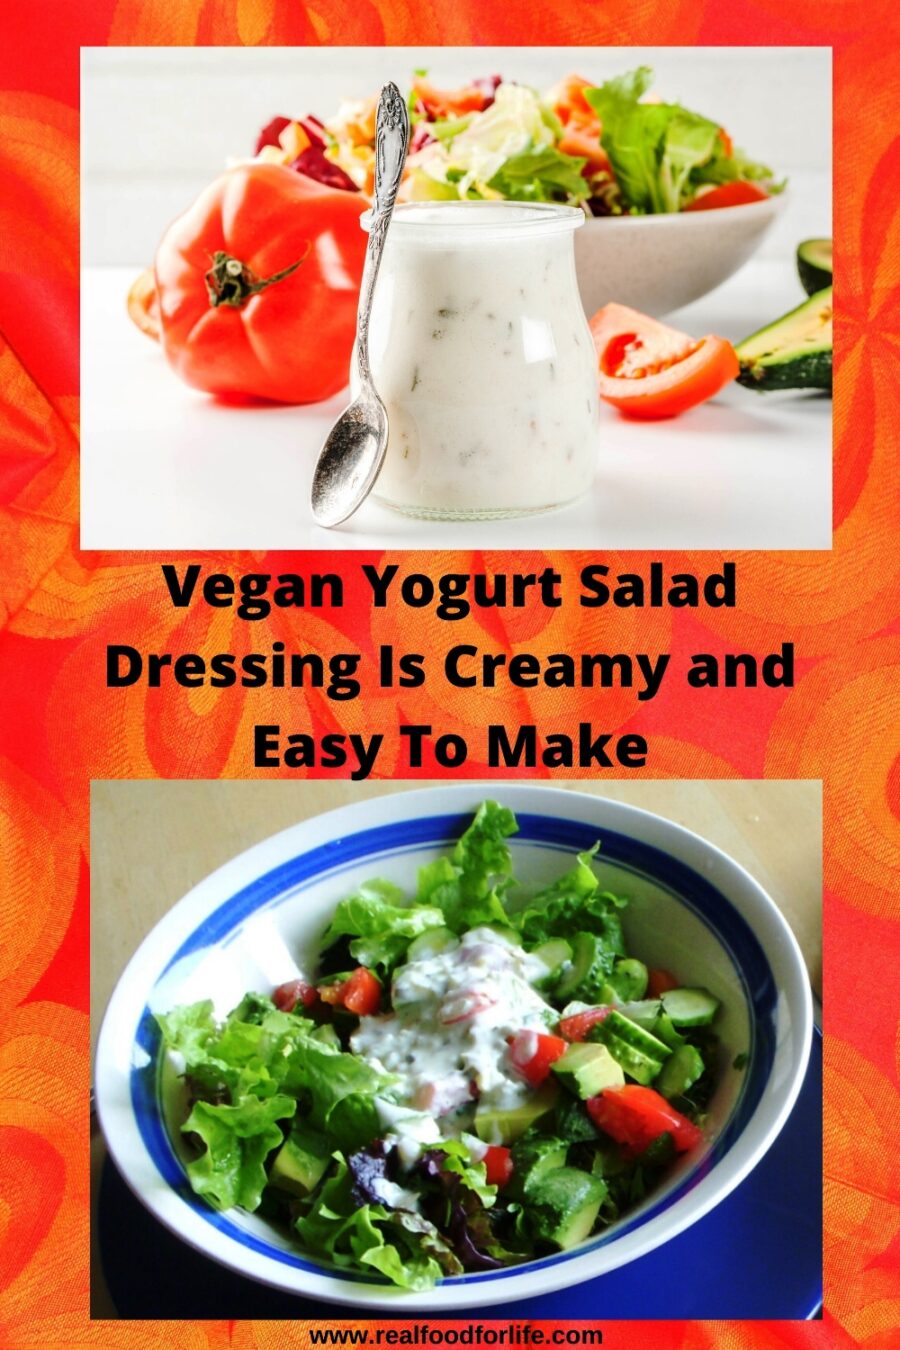 Vegan Yogurt Salad Dressing